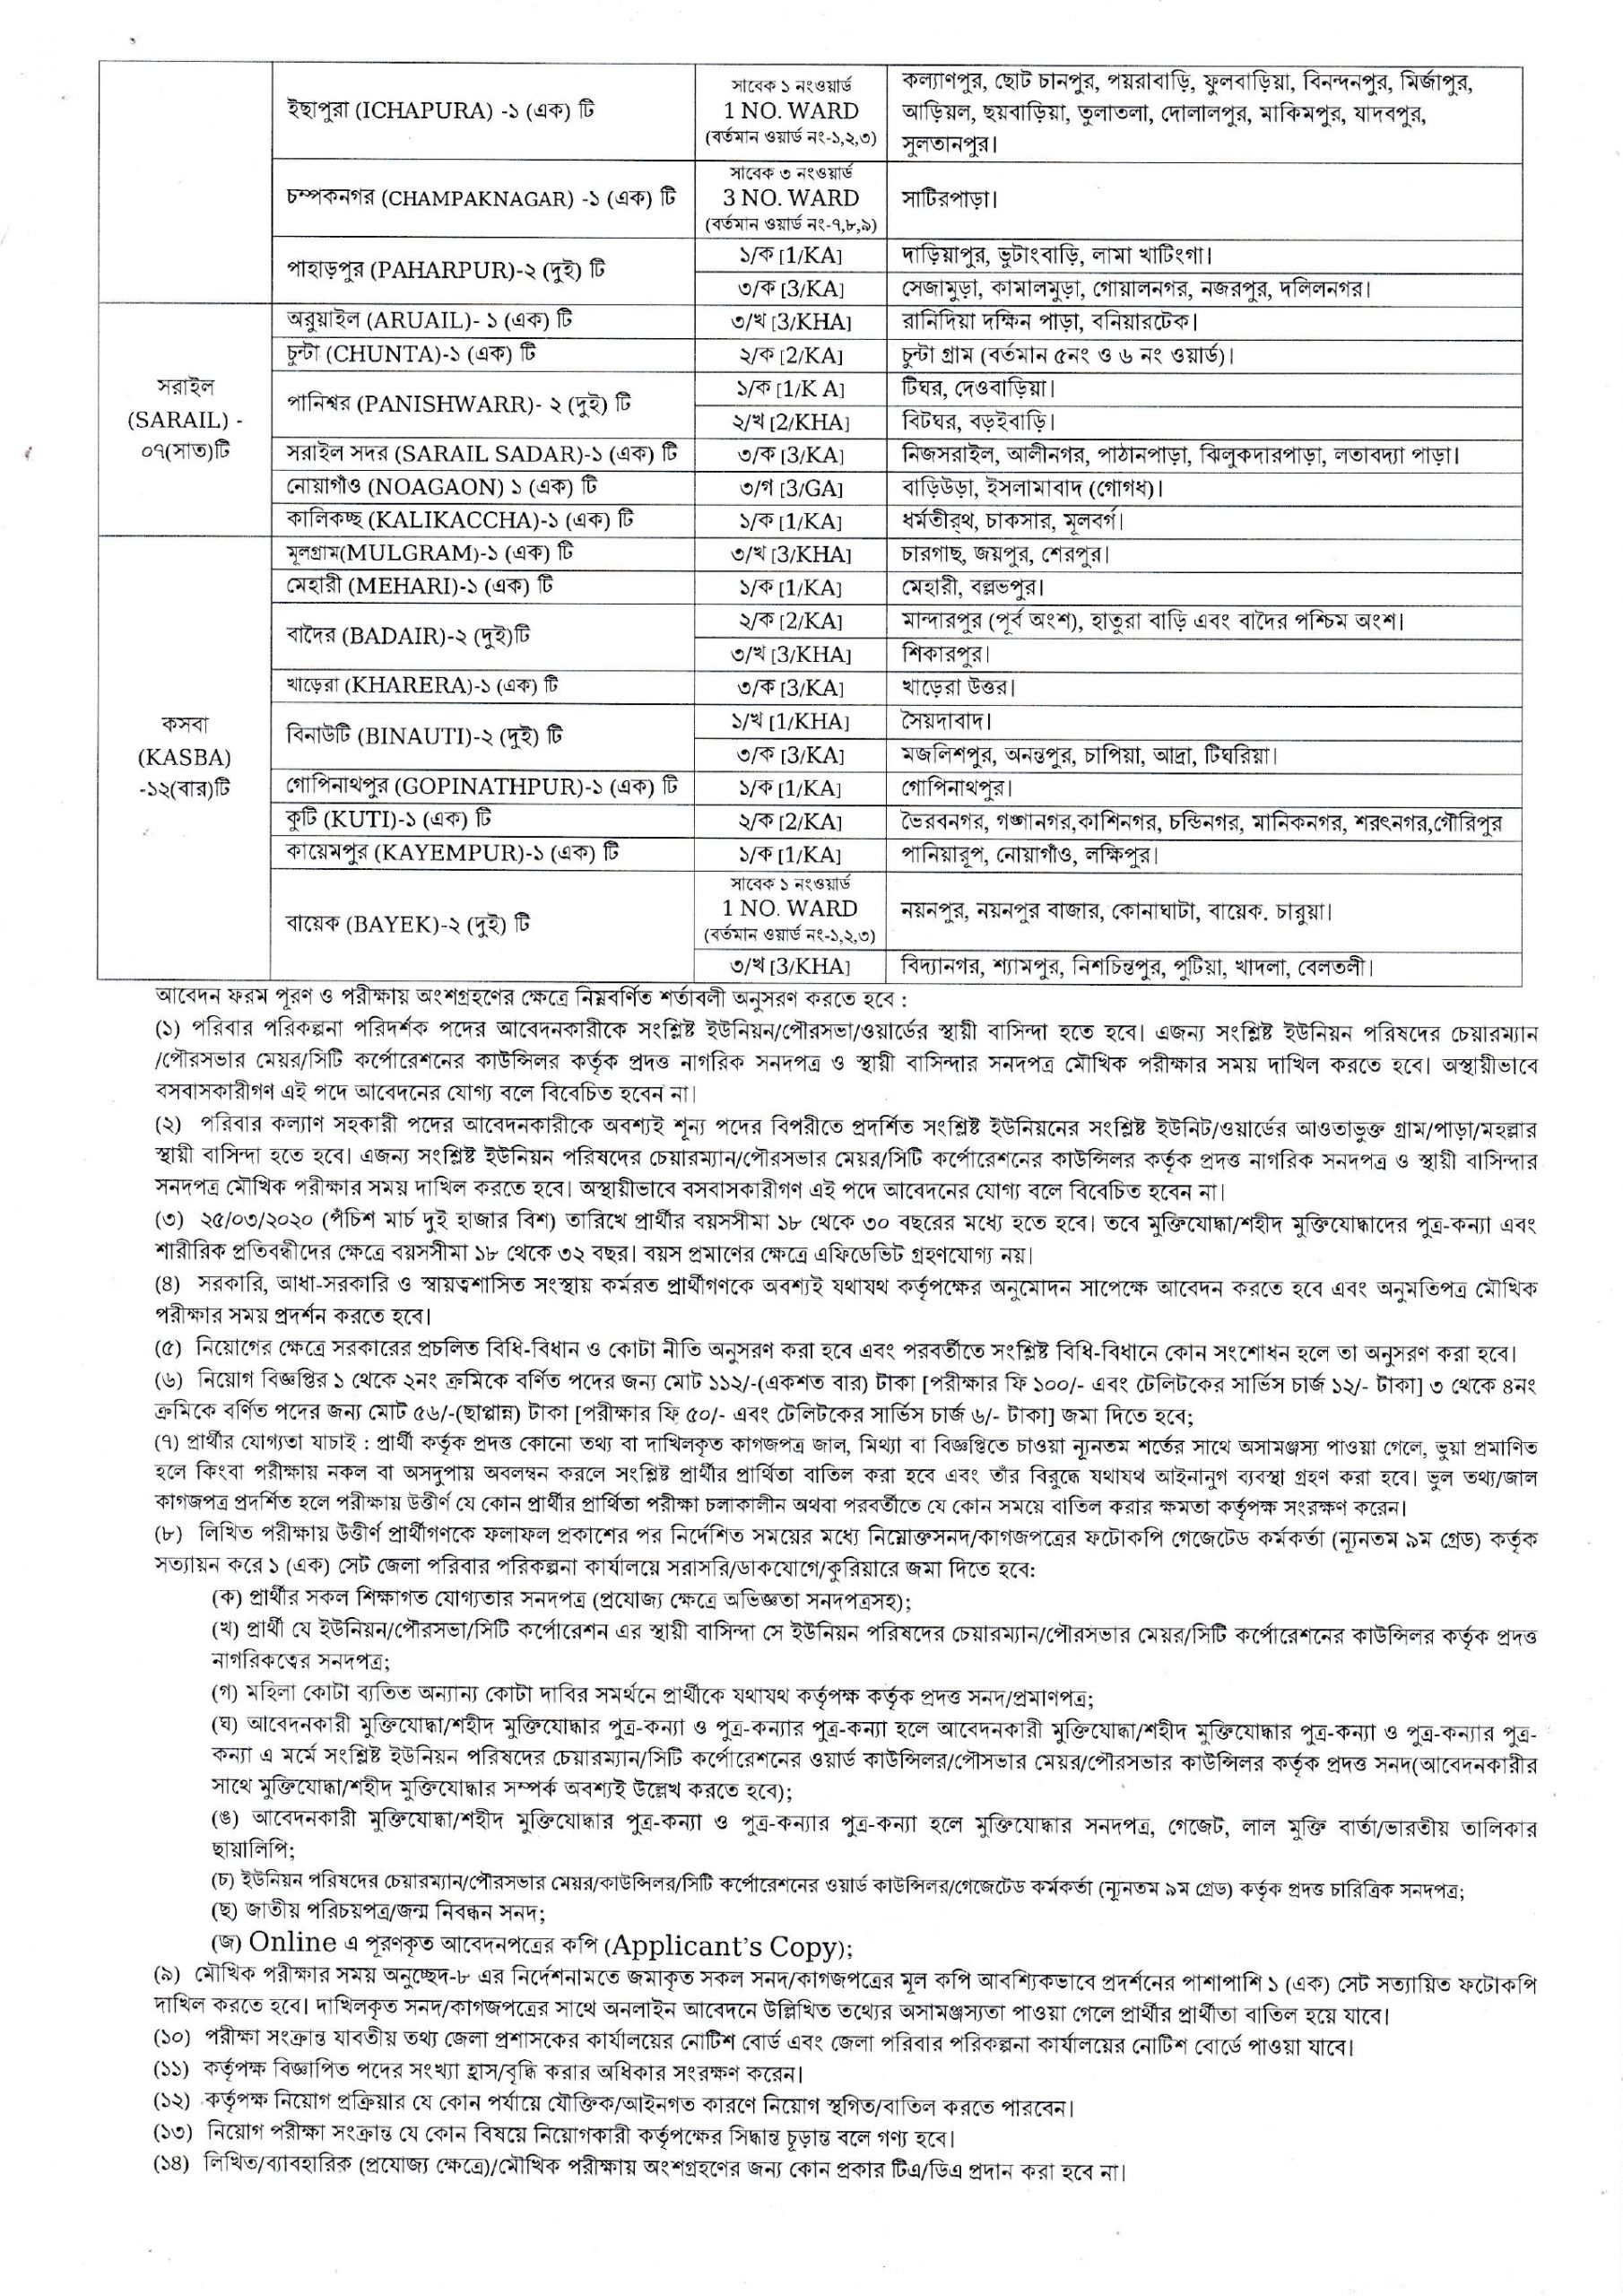 Brahmanbaria Family planning Job Circular 2021, Brahmanbaria poribar porikolpona job circular 2021, ব্রাহ্মণবাড়িয়া পরিবার পরিকল্পনা জব সার্কুলার ২০২১-3